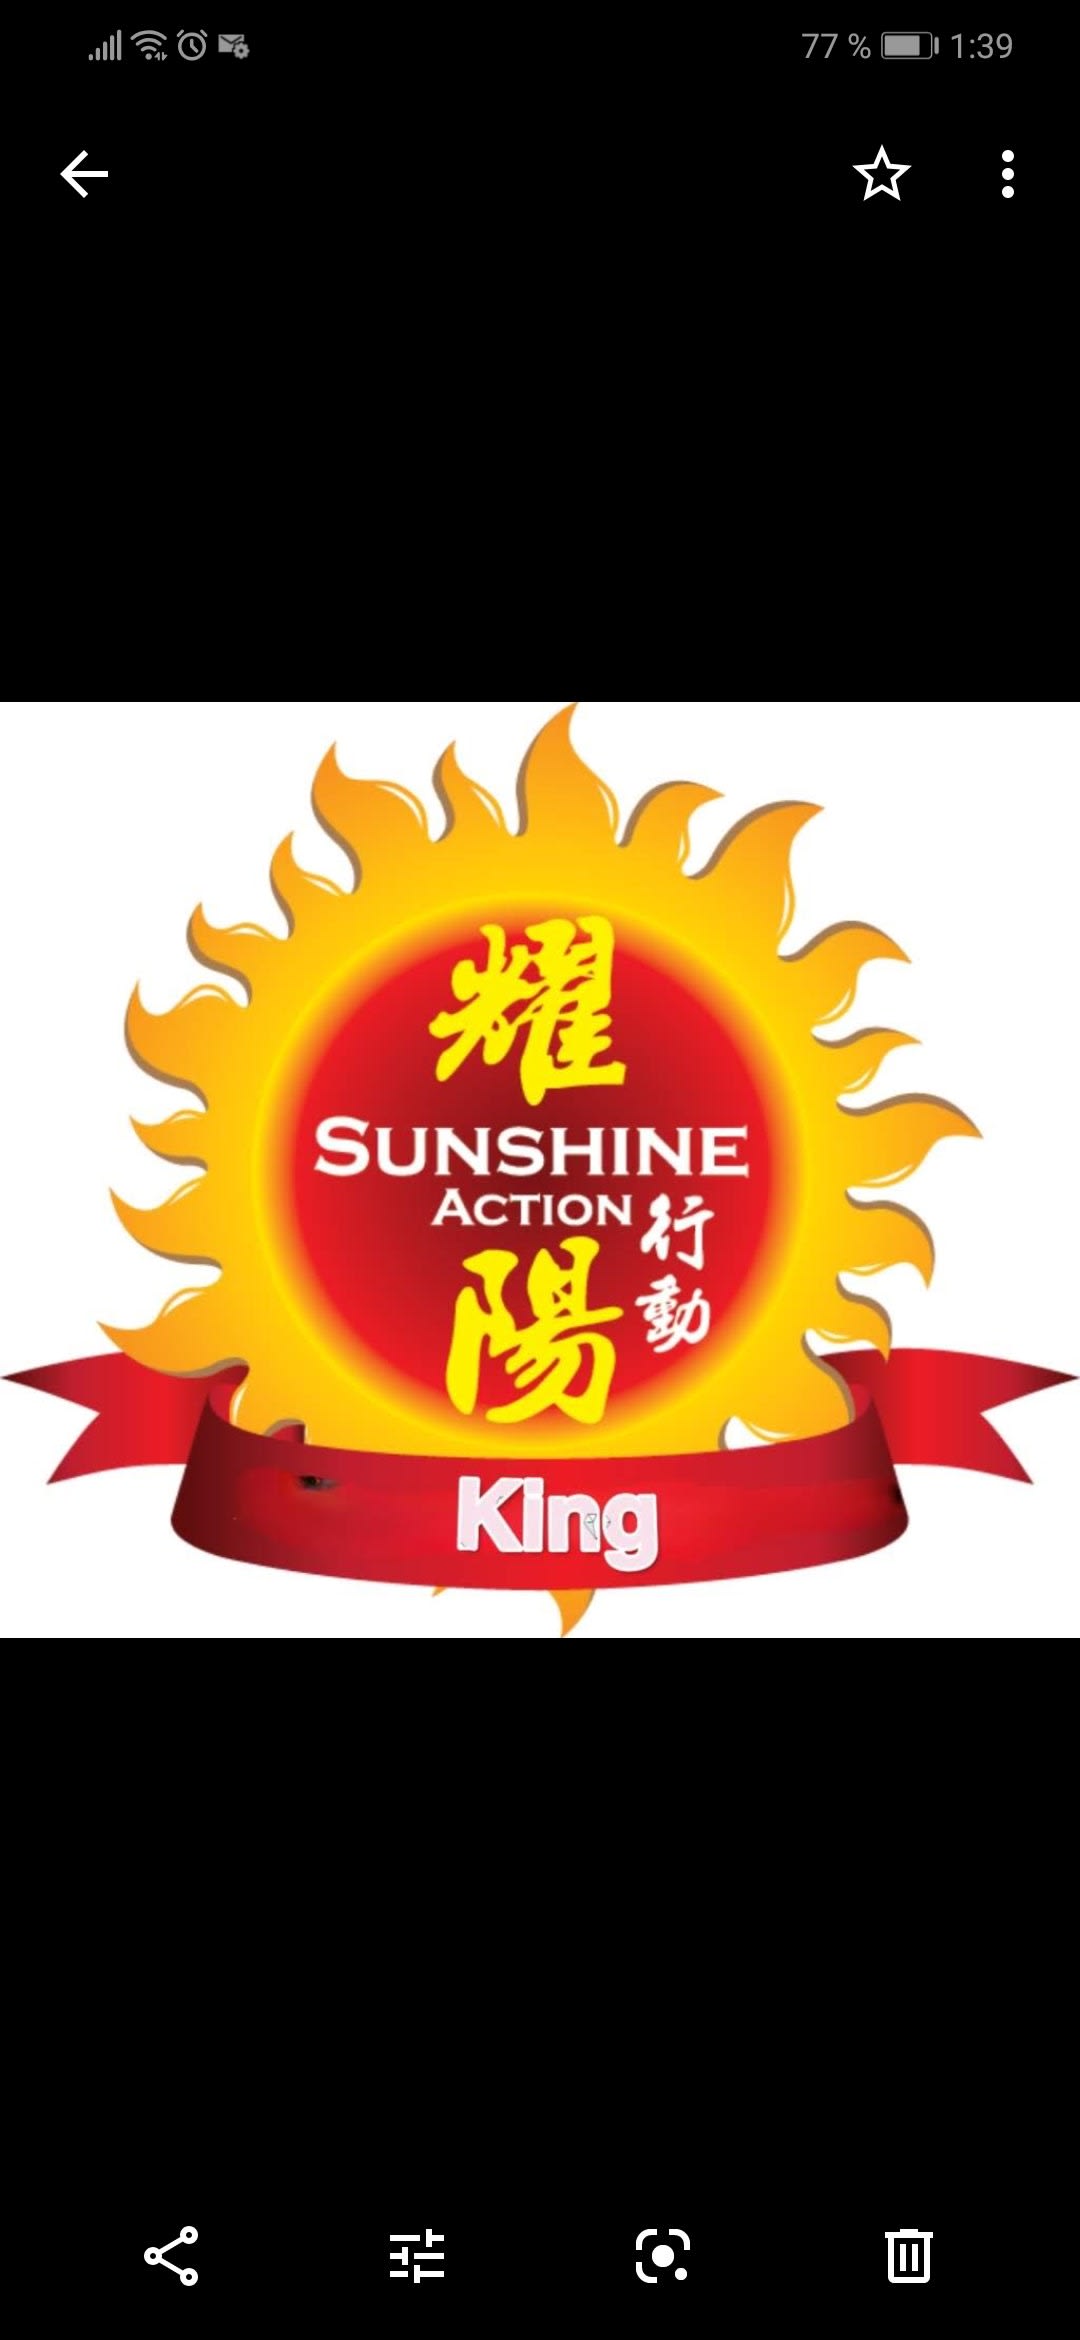 King Sushine